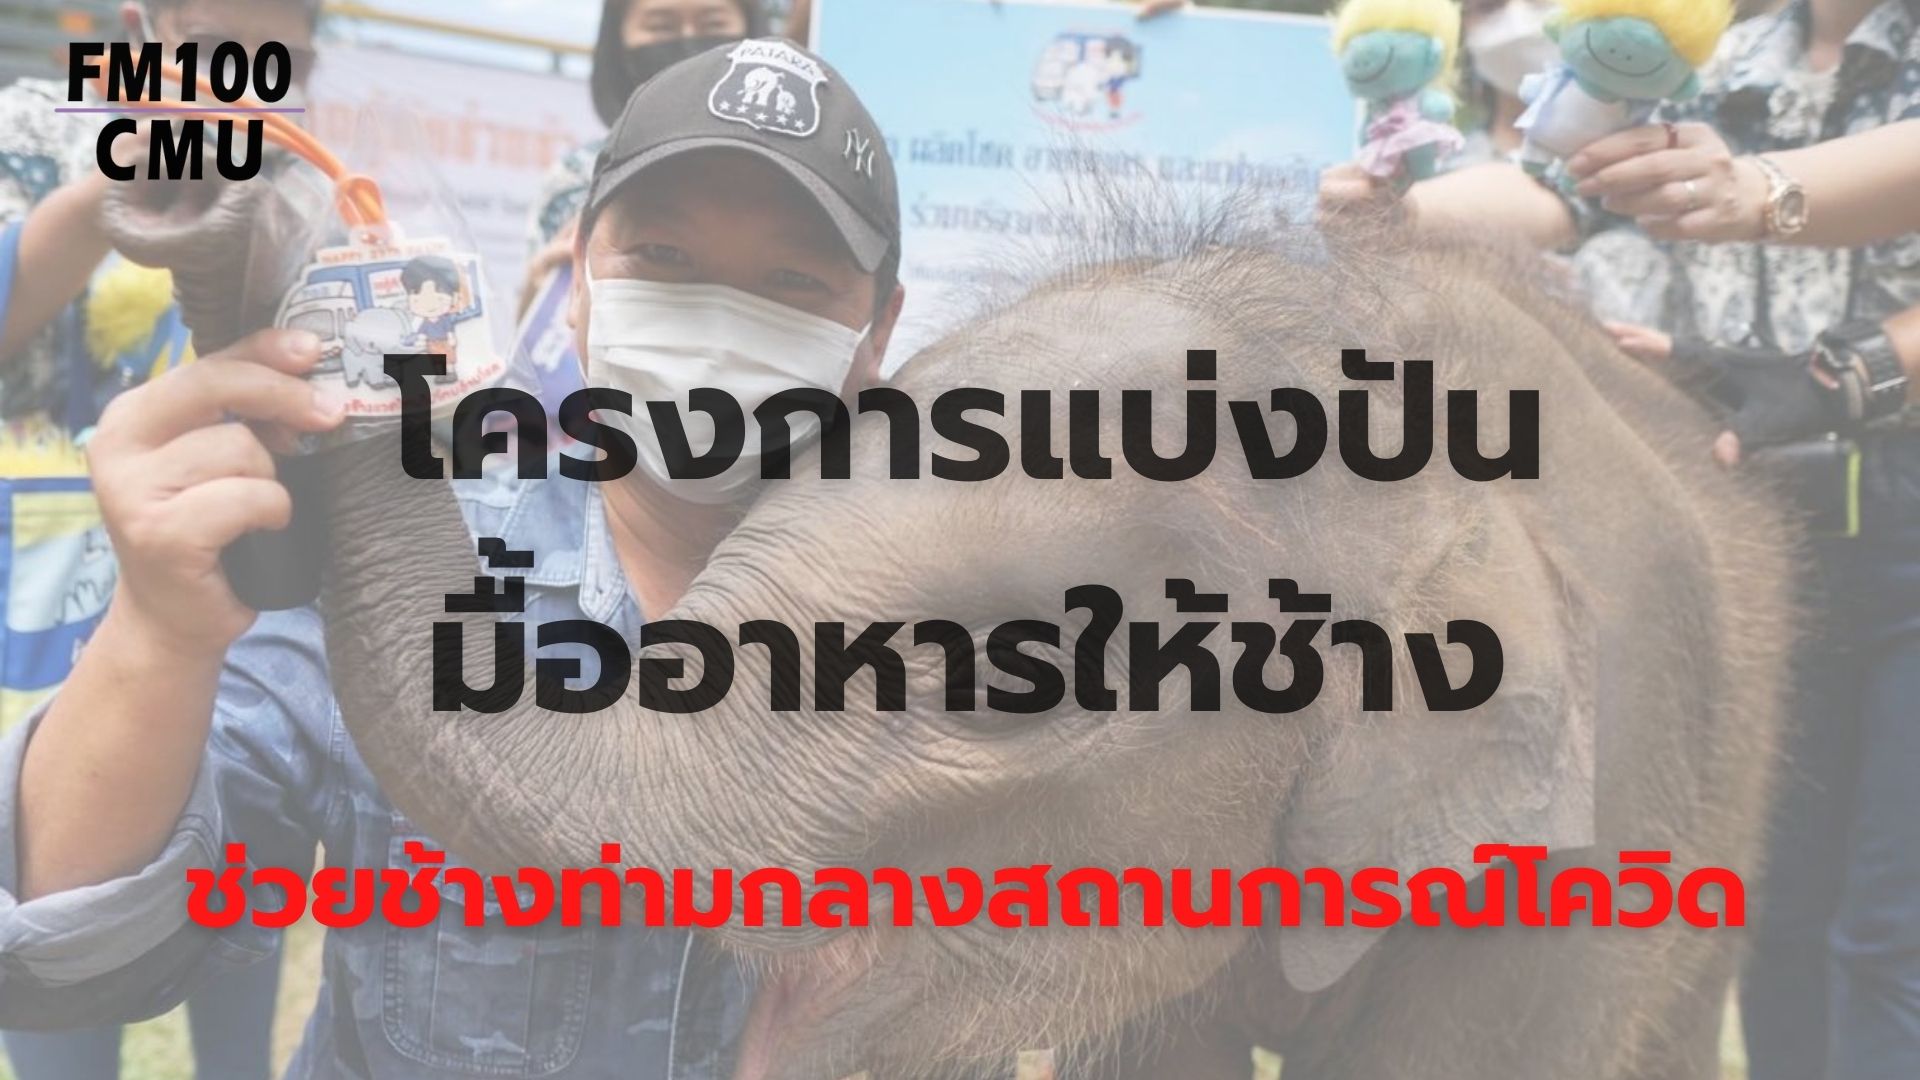 สมาคมสหพันธ์ช้างไทยผนึกกำลังทหาร องค์กรปกครองท้องถิ่น และภาคเอกชน จัดทำแปลงหญ้าอาหารช้างช่วยเหลือช้างในพื้นที่เชียงใหม่และทั่วประเทศ